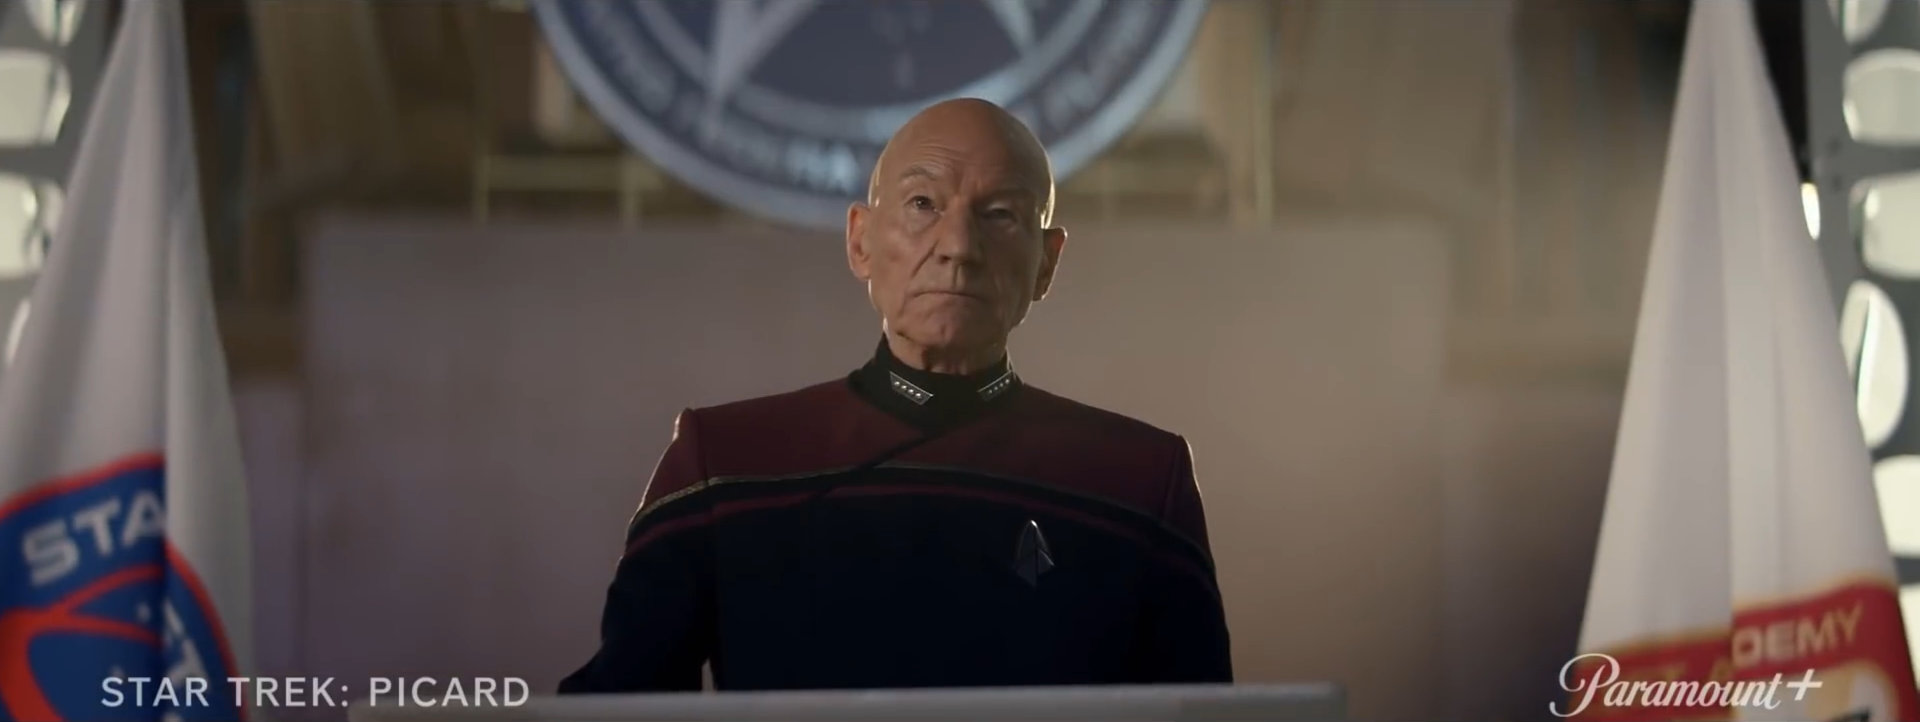 Admiral Picard am Rednerpult